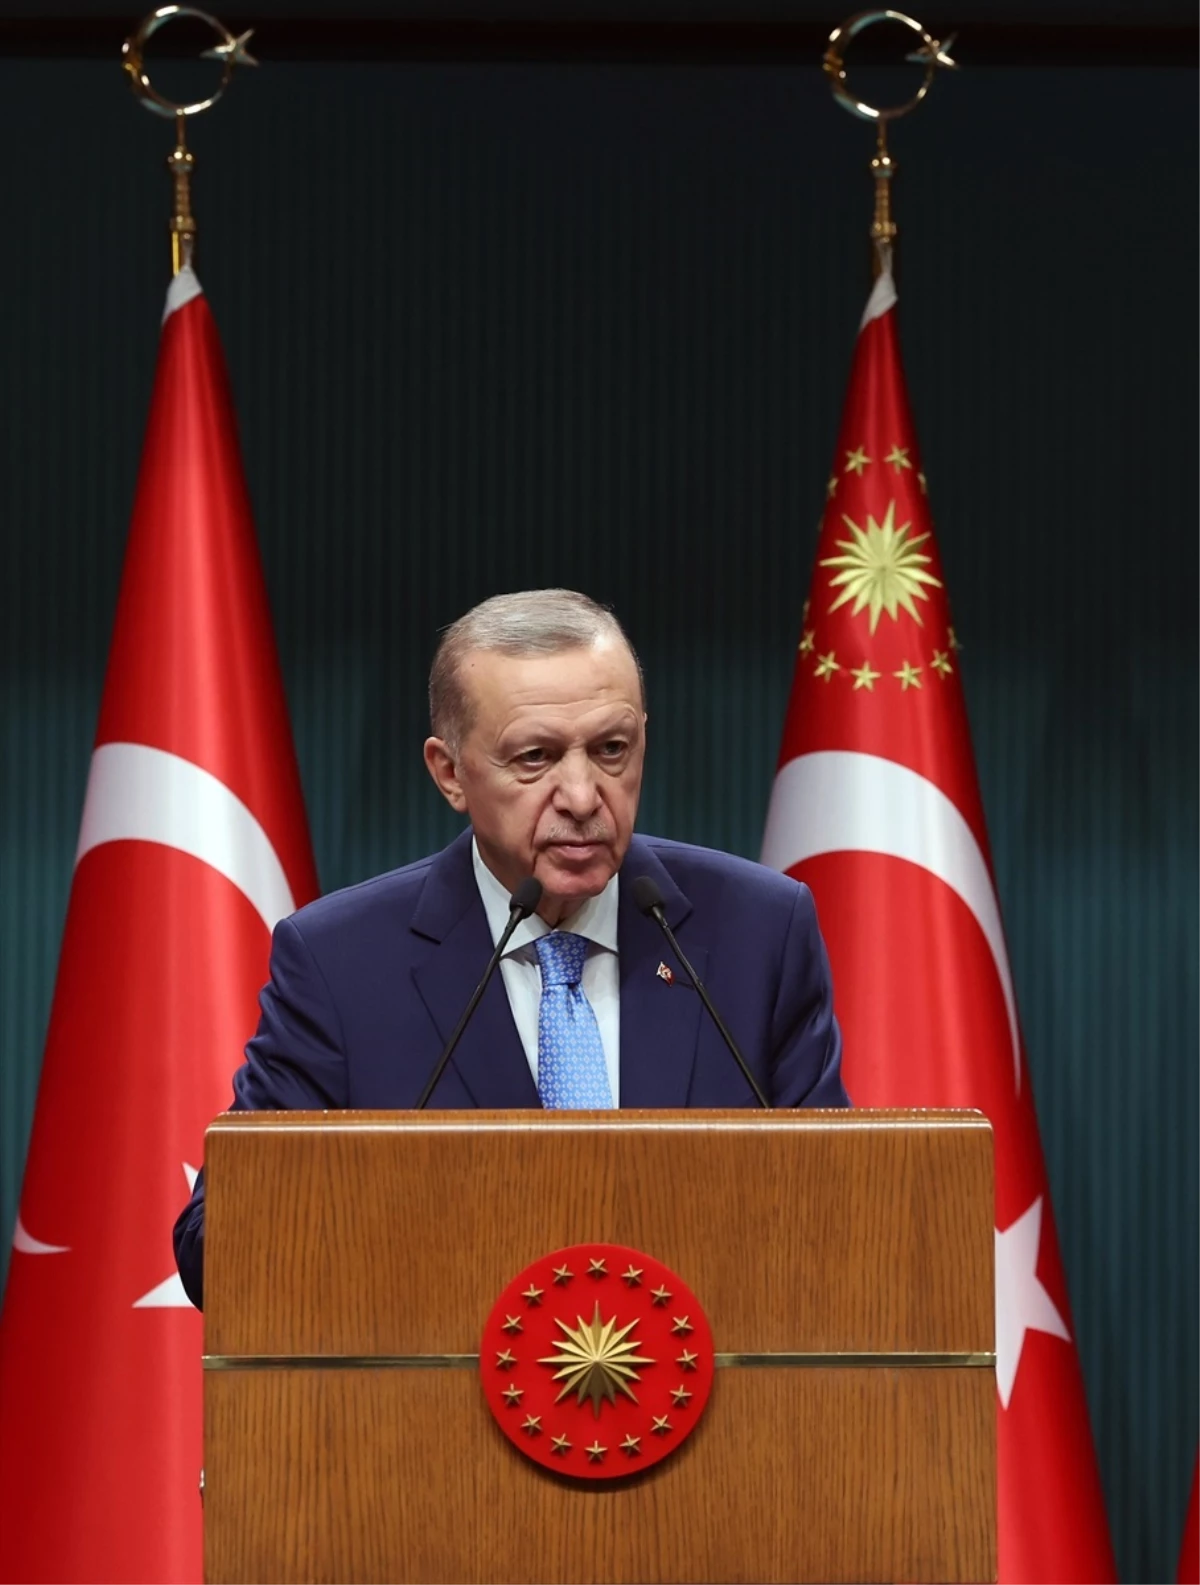 Cumhurbaşkanı Erdoğan: "Devlet aklını tamamen yitirdiği görülen ve örgüt gibi davranan İsrail\'in bir an önce durdurulması gerektiğine inanıyoruz."